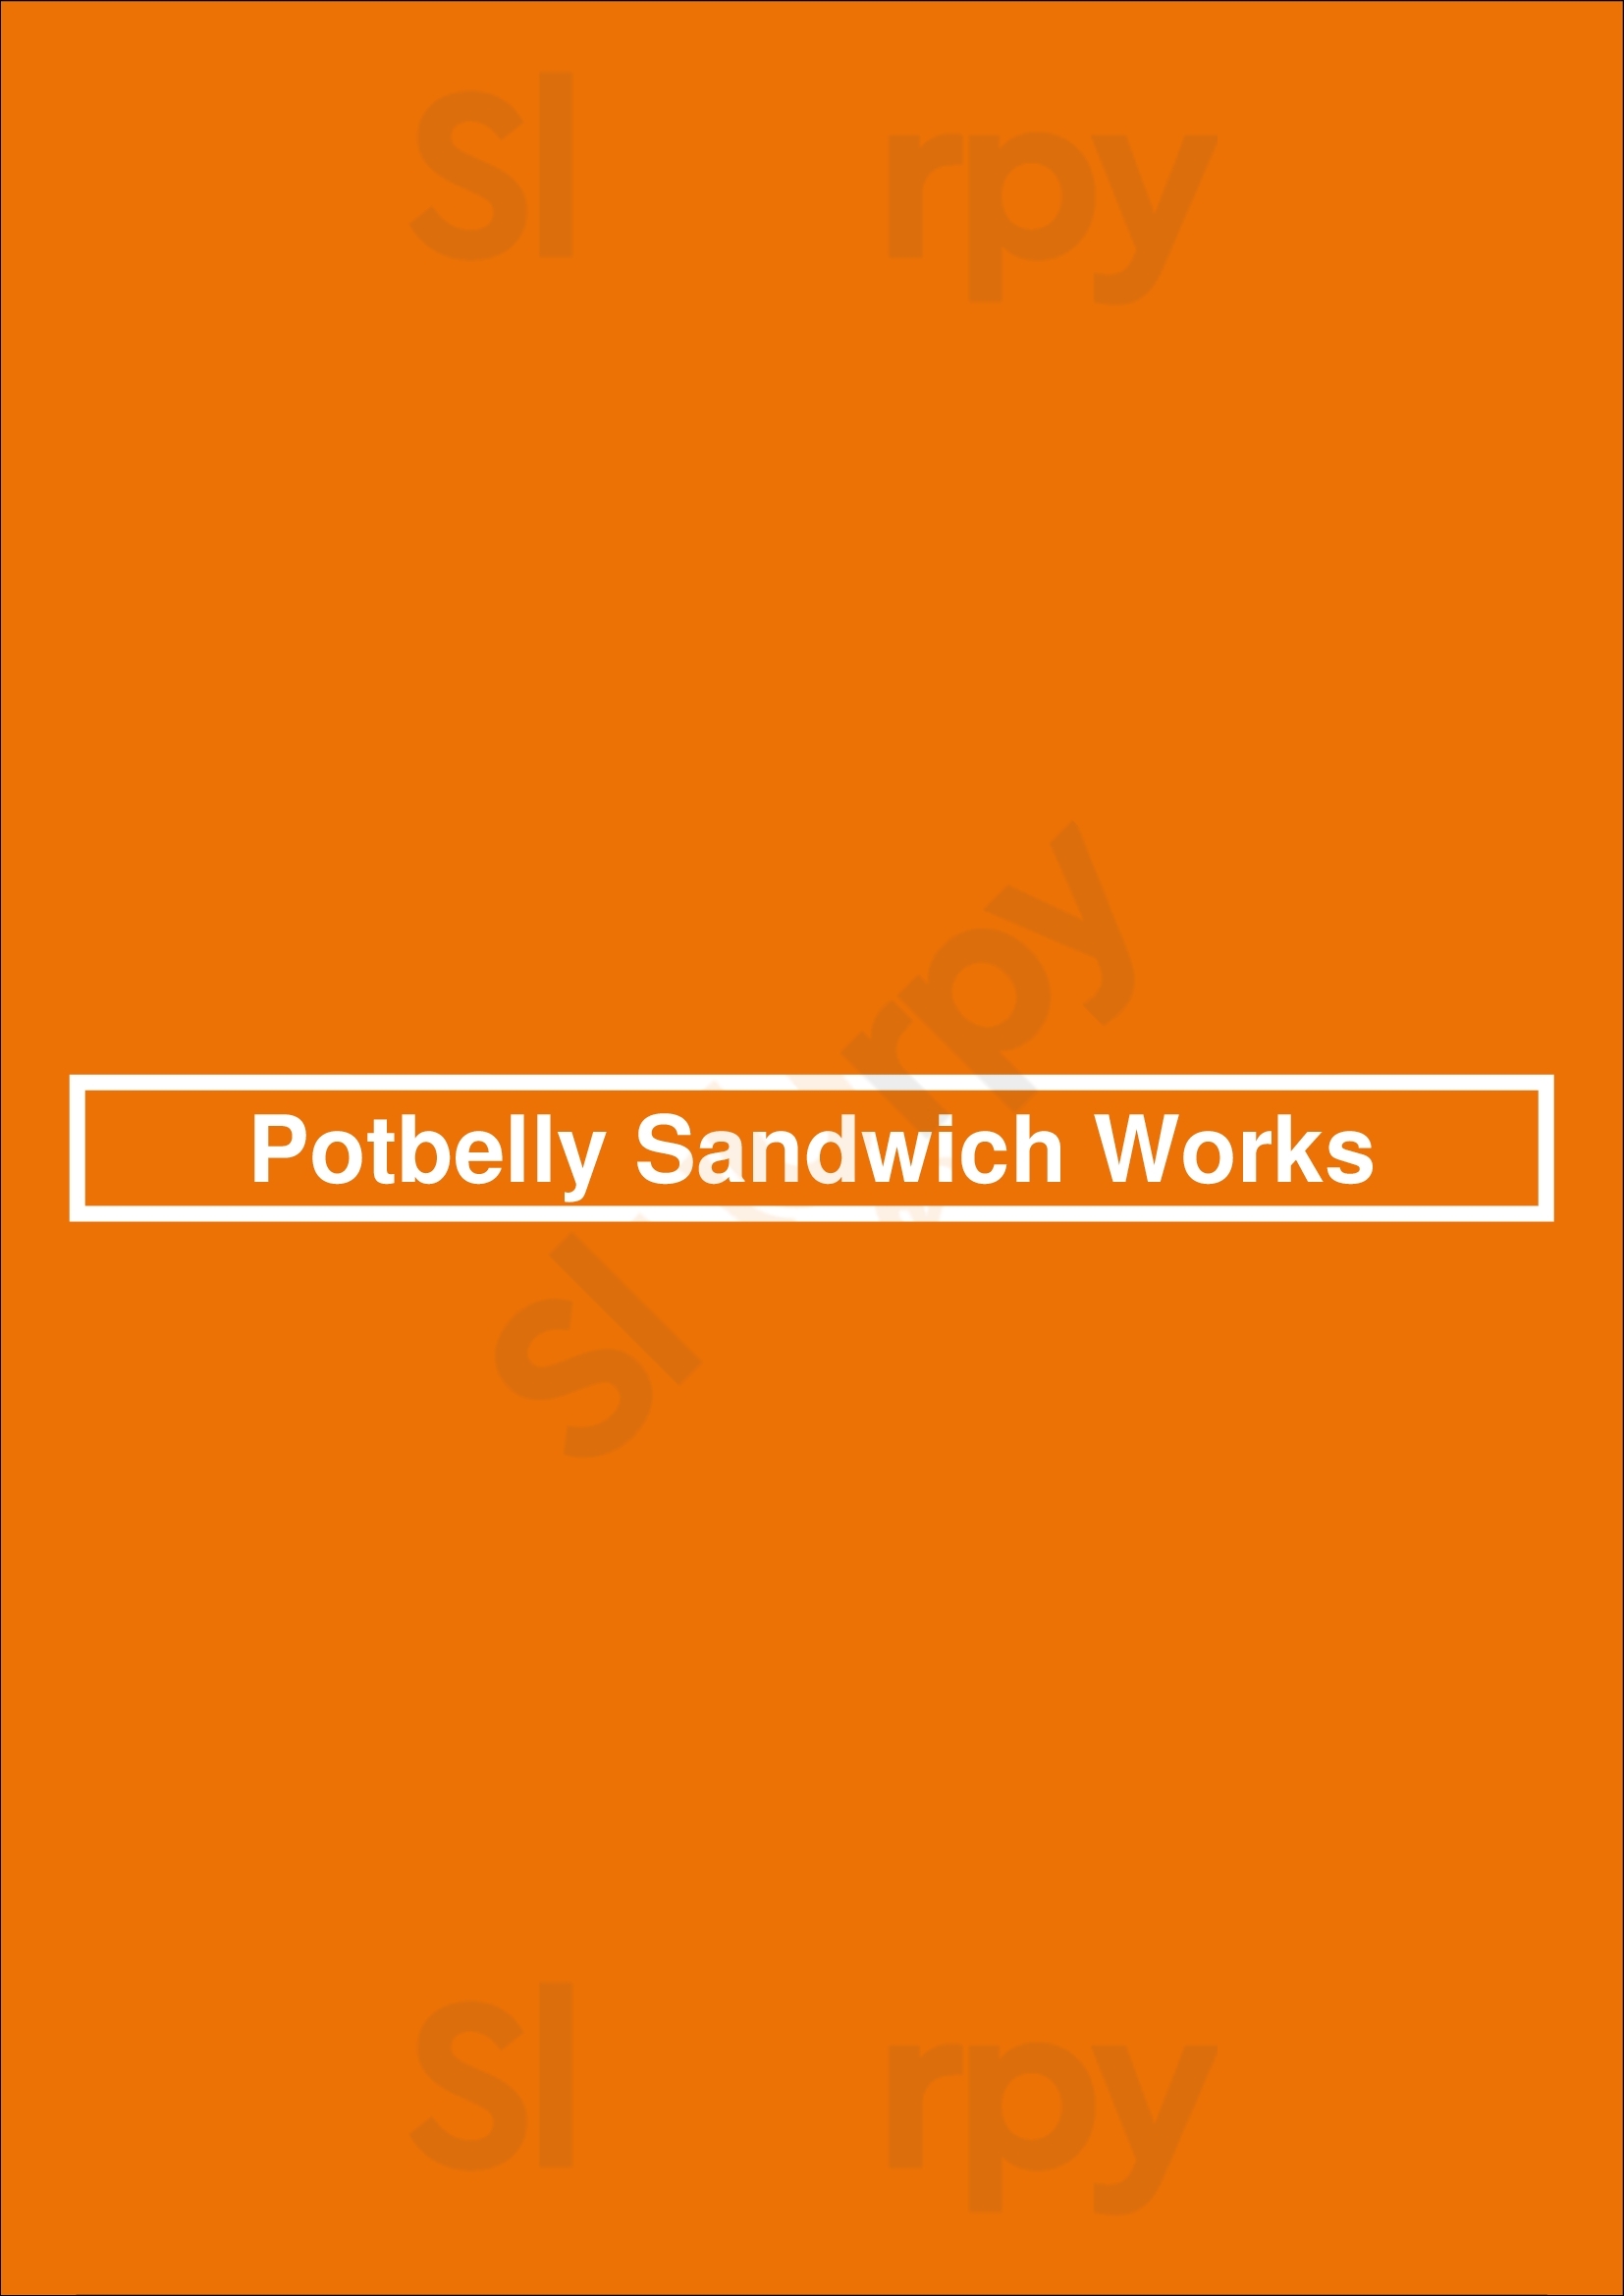 Potbelly Sandwich Shop Houston Menu - 1